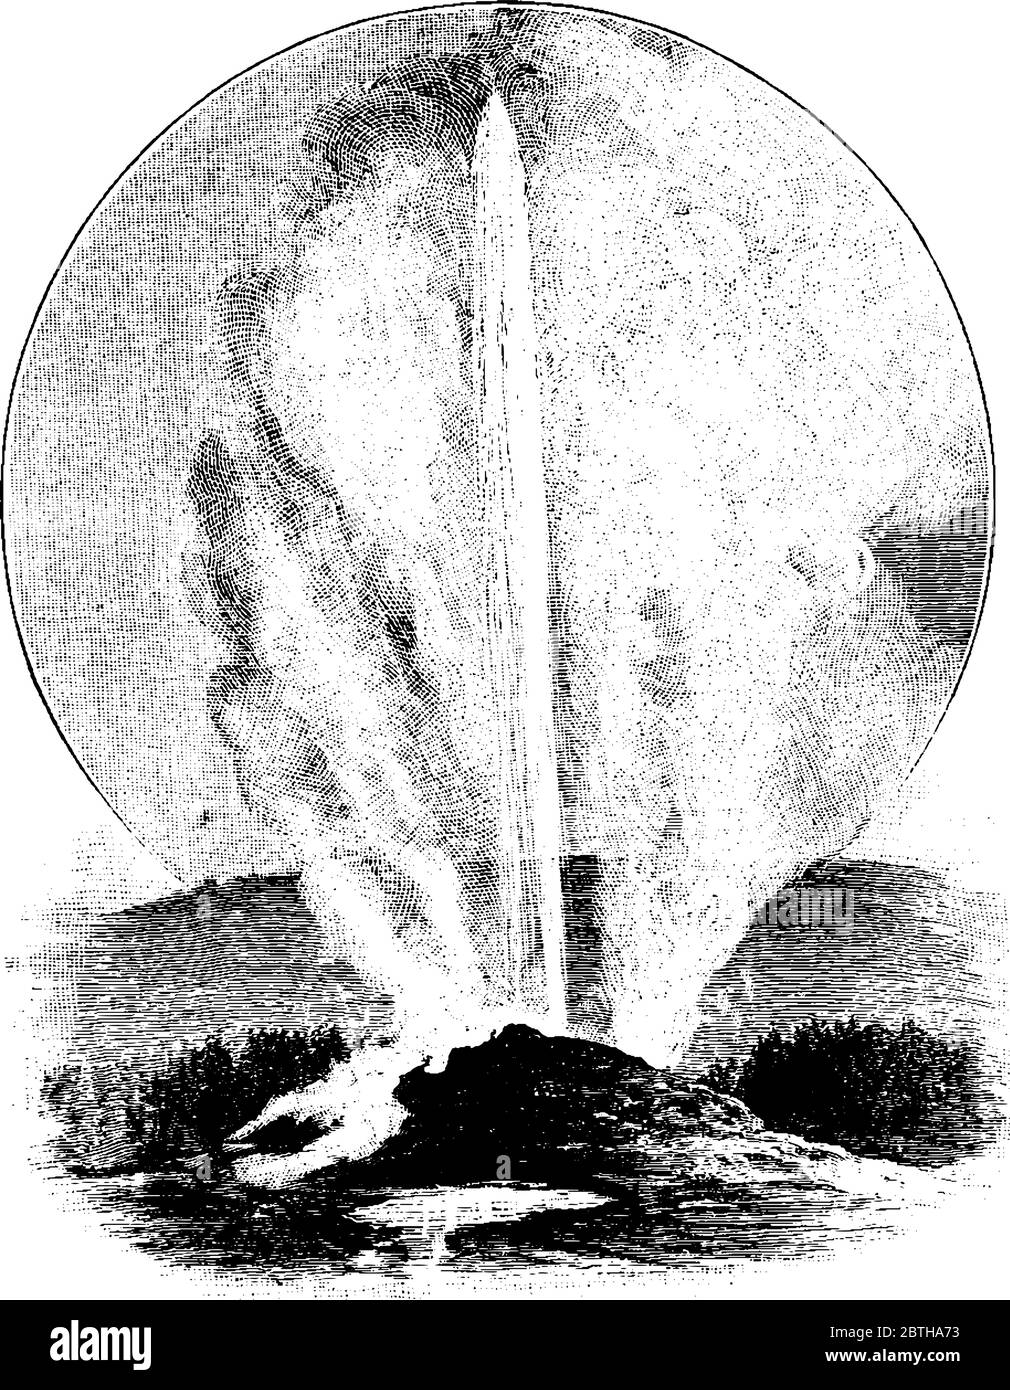 Immagine che mostra l'eruzione di una grande sorgente e l'acqua che esce, disegno di linee vintage o illustrazione di incisione. Illustrazione Vettoriale